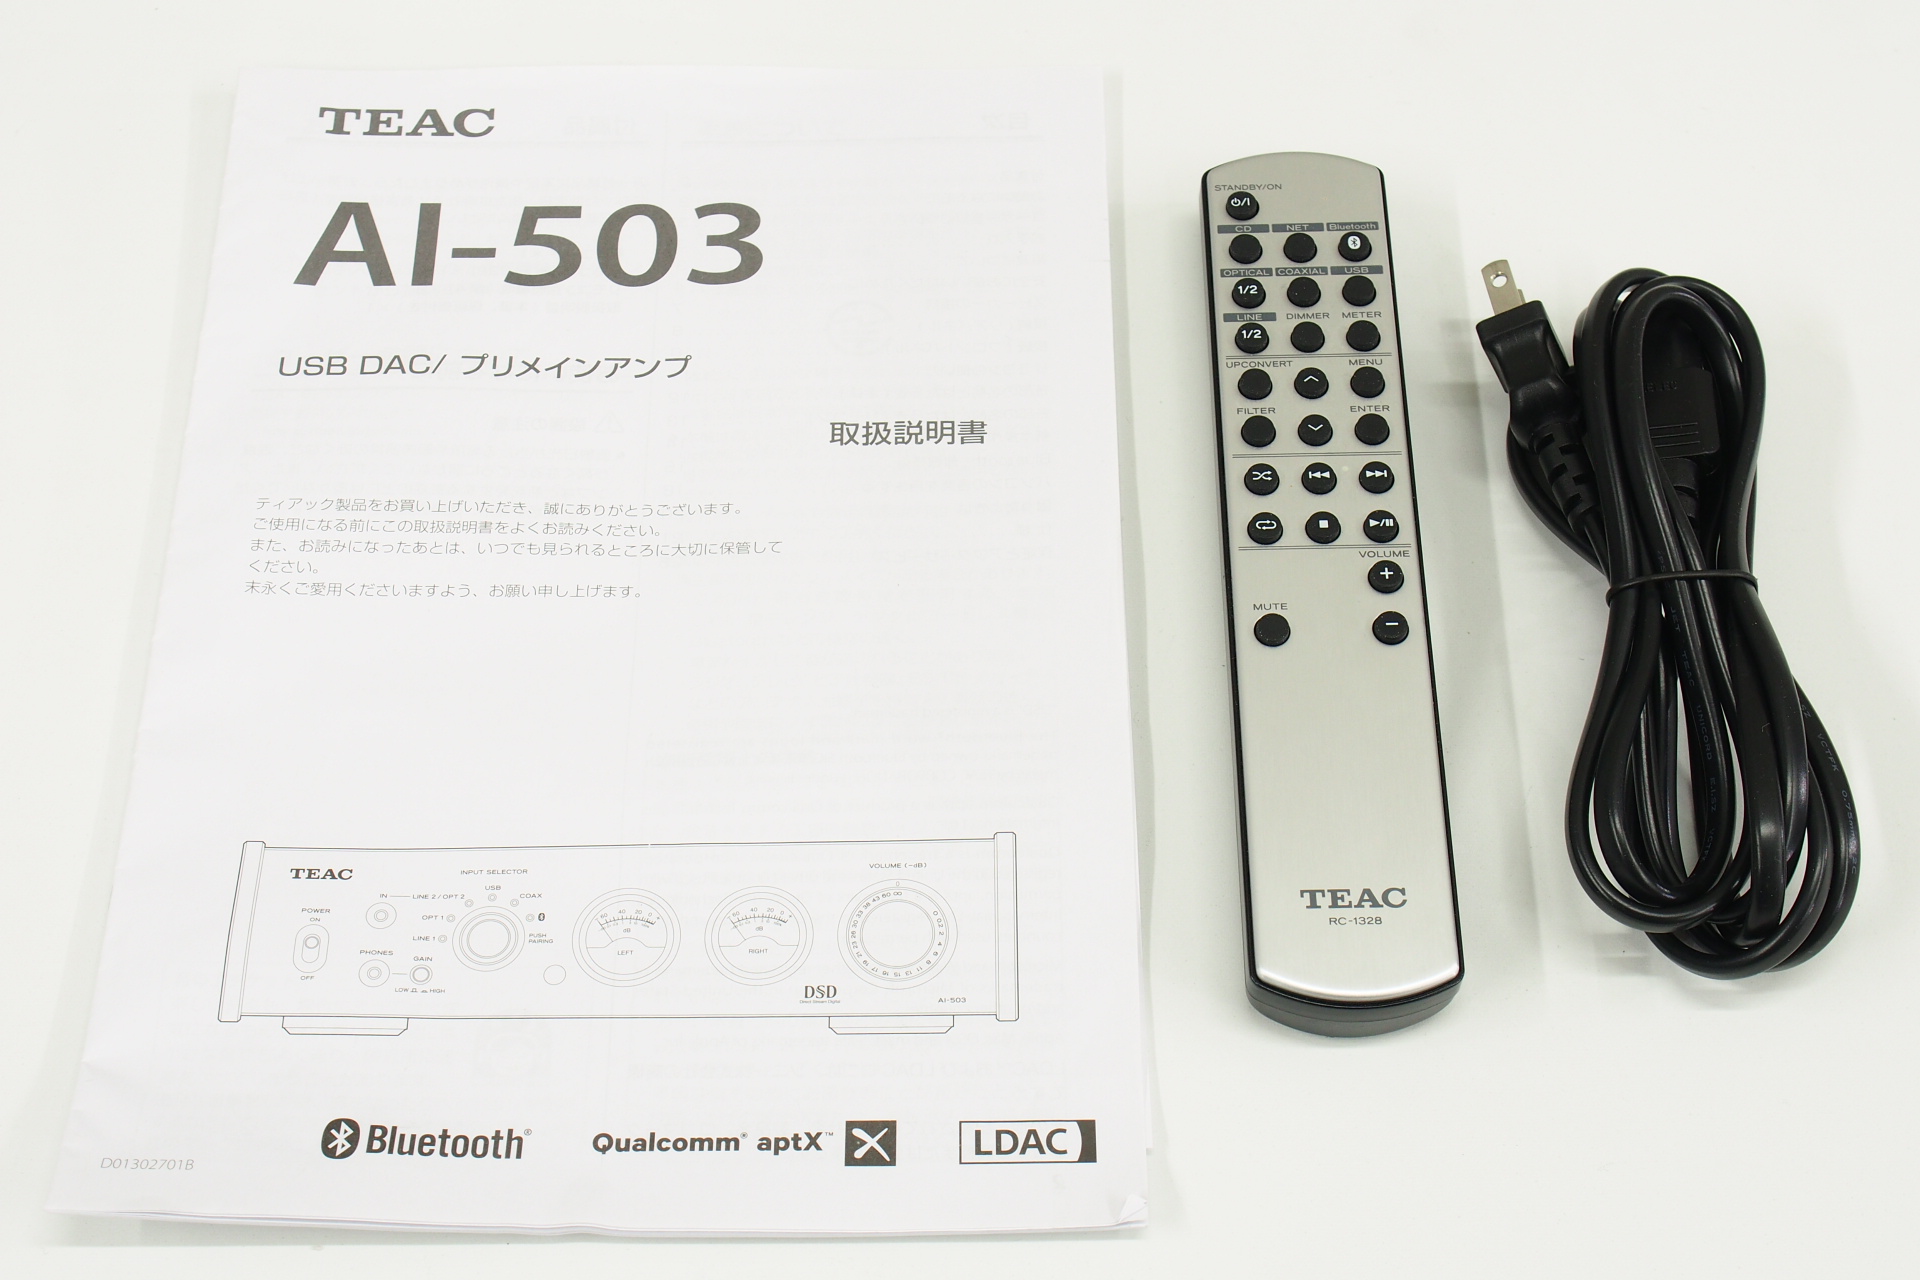 アバックWEB-SHOP / 【中古】TEAC AI-503(B)【コード01-08391】USB DAC